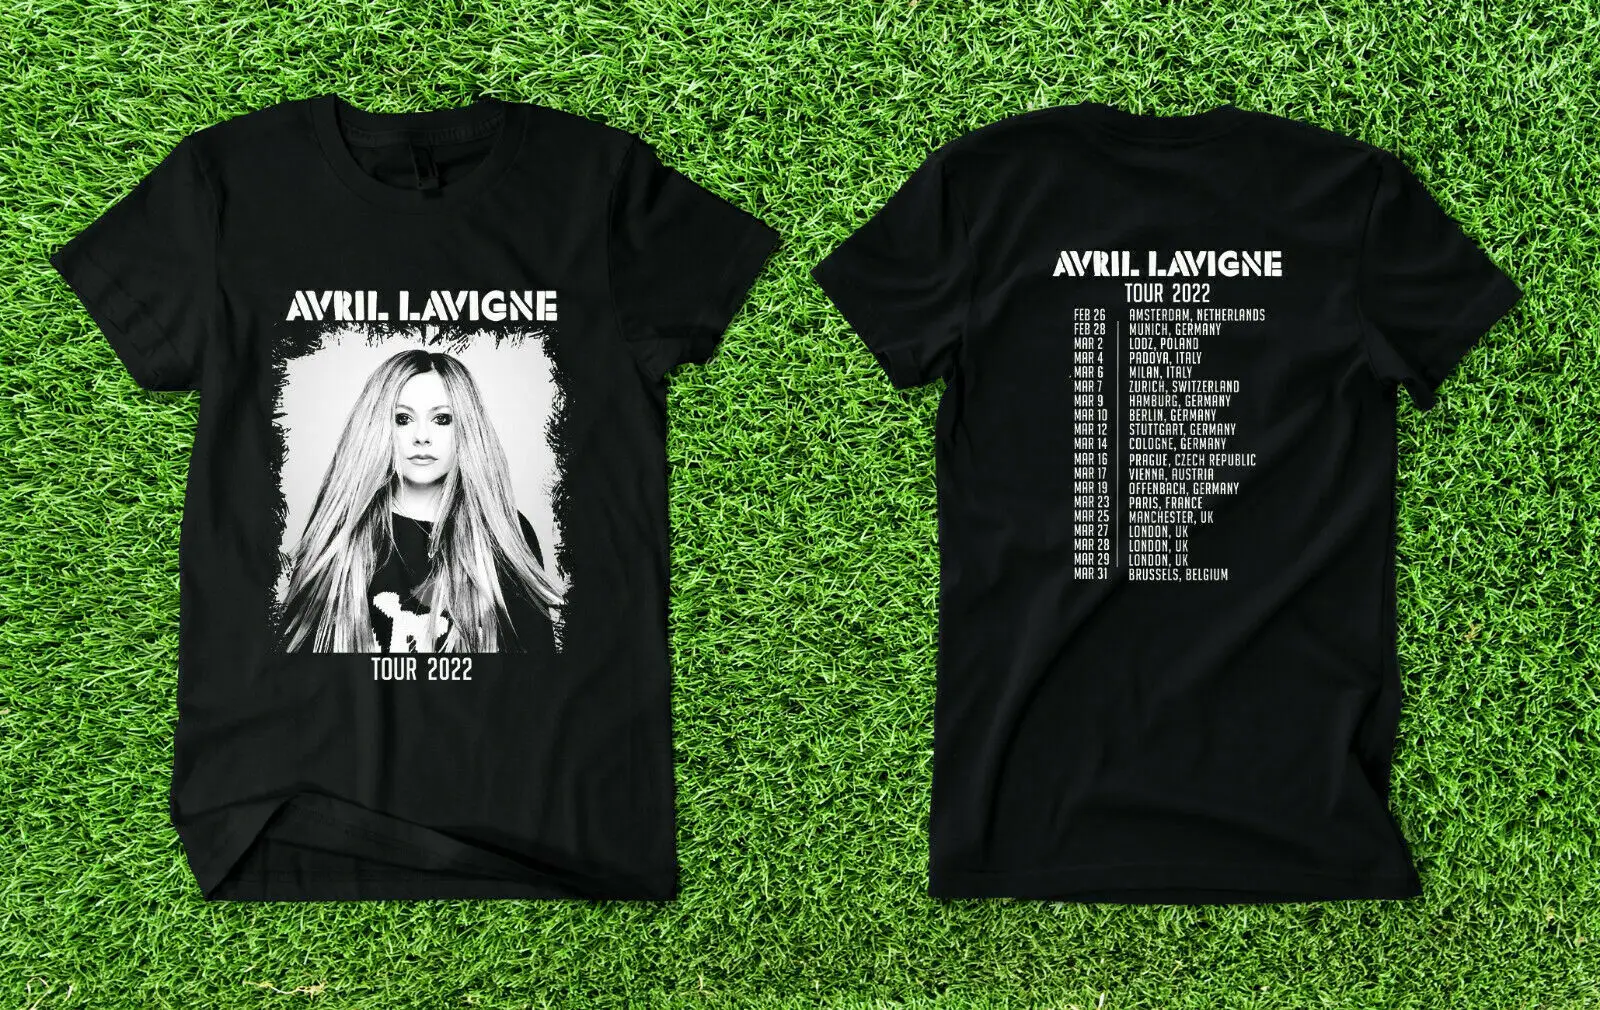 

Avril Lavigne Tour 2022 New Shirt Men's S-3XL Cotton